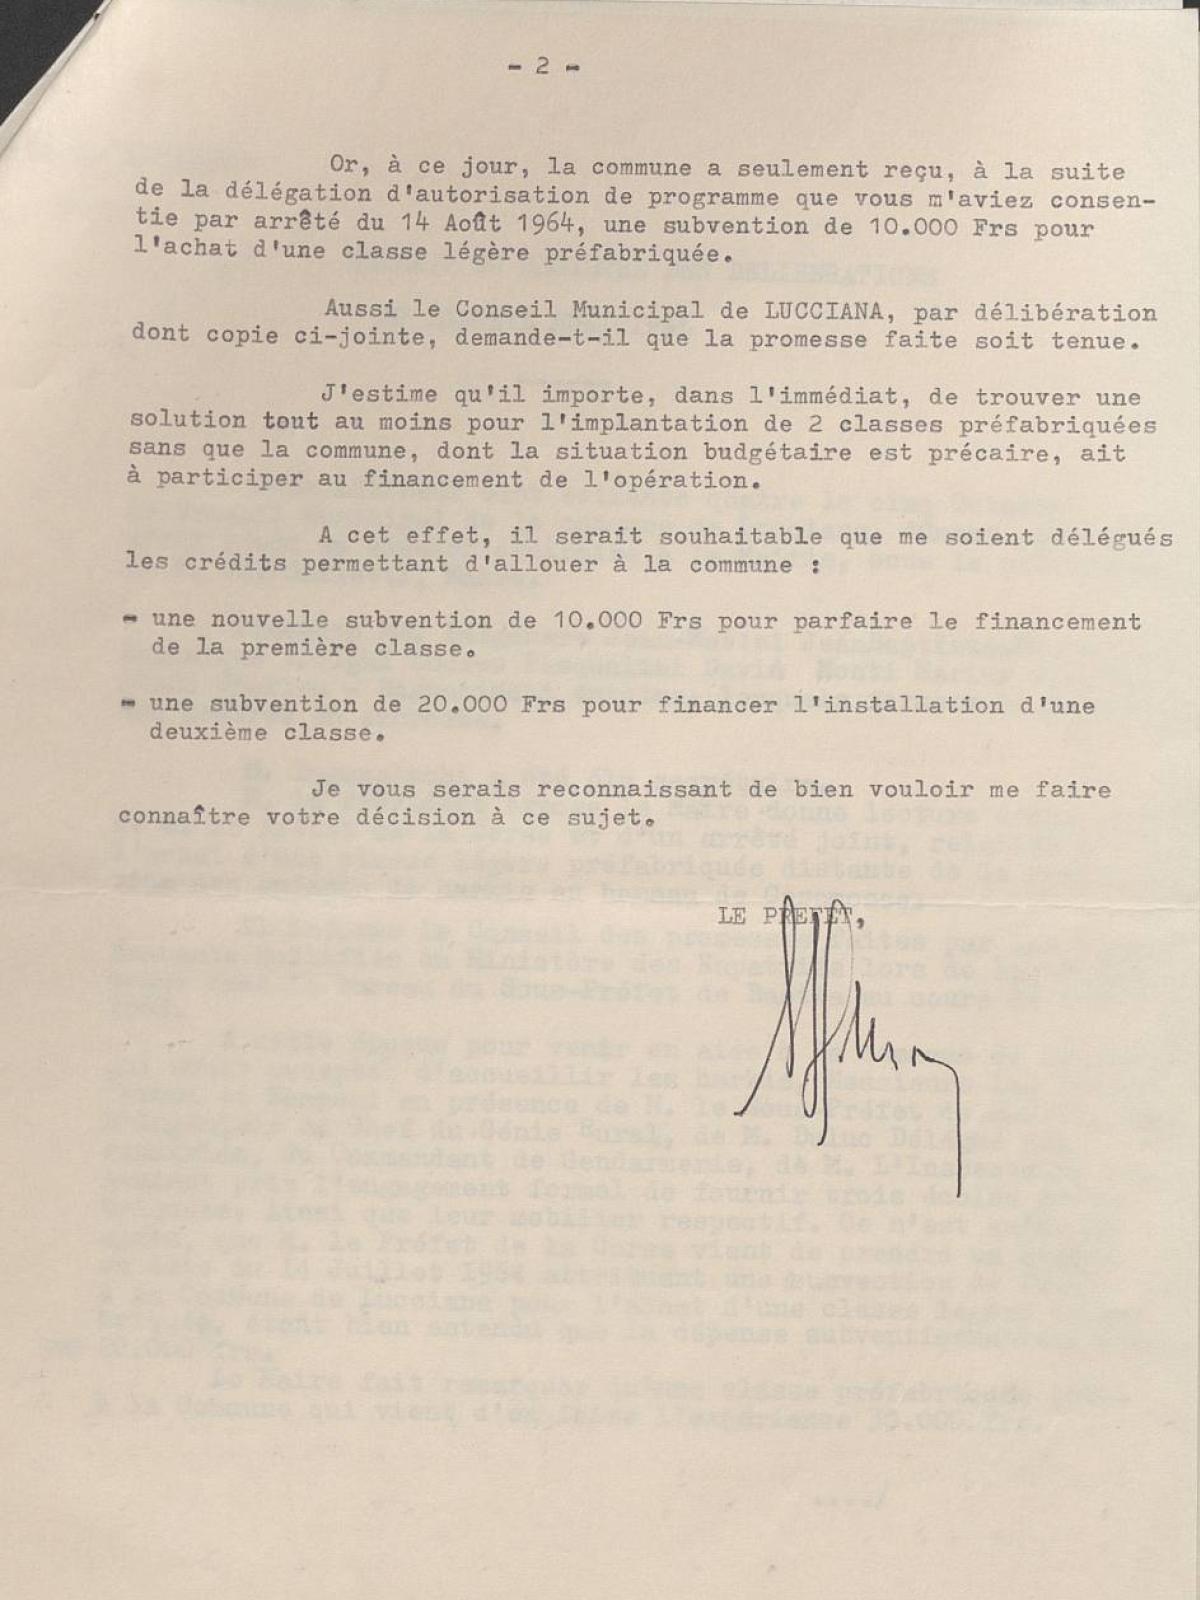 Illustration 11 : lettre du préfet de la Corse au ministère de l’Éducation nationale relative à l’achat de classes préfabriquées pour les enfants de Harkis de Casamozza, 28 décembre 1964 (Archives nationales, 1977074/3)